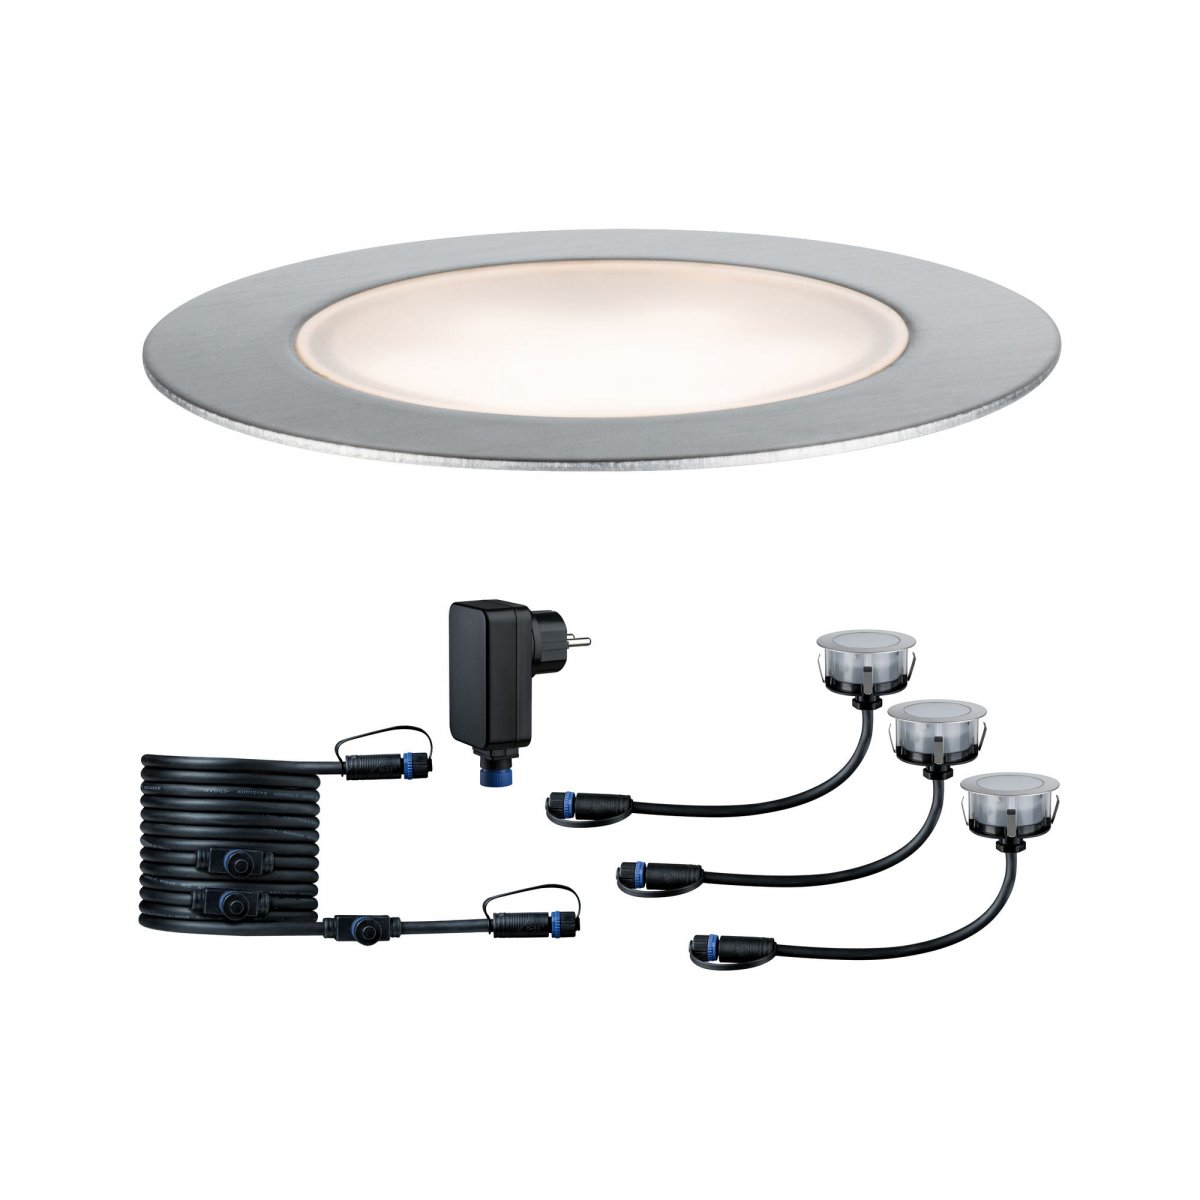 Lampen online No. --> & Floor 93692 Plug&Shine IP65 Eco Leuchten Silber 3x1W Paulmann Warmweiß Bodeneinbauleuchte